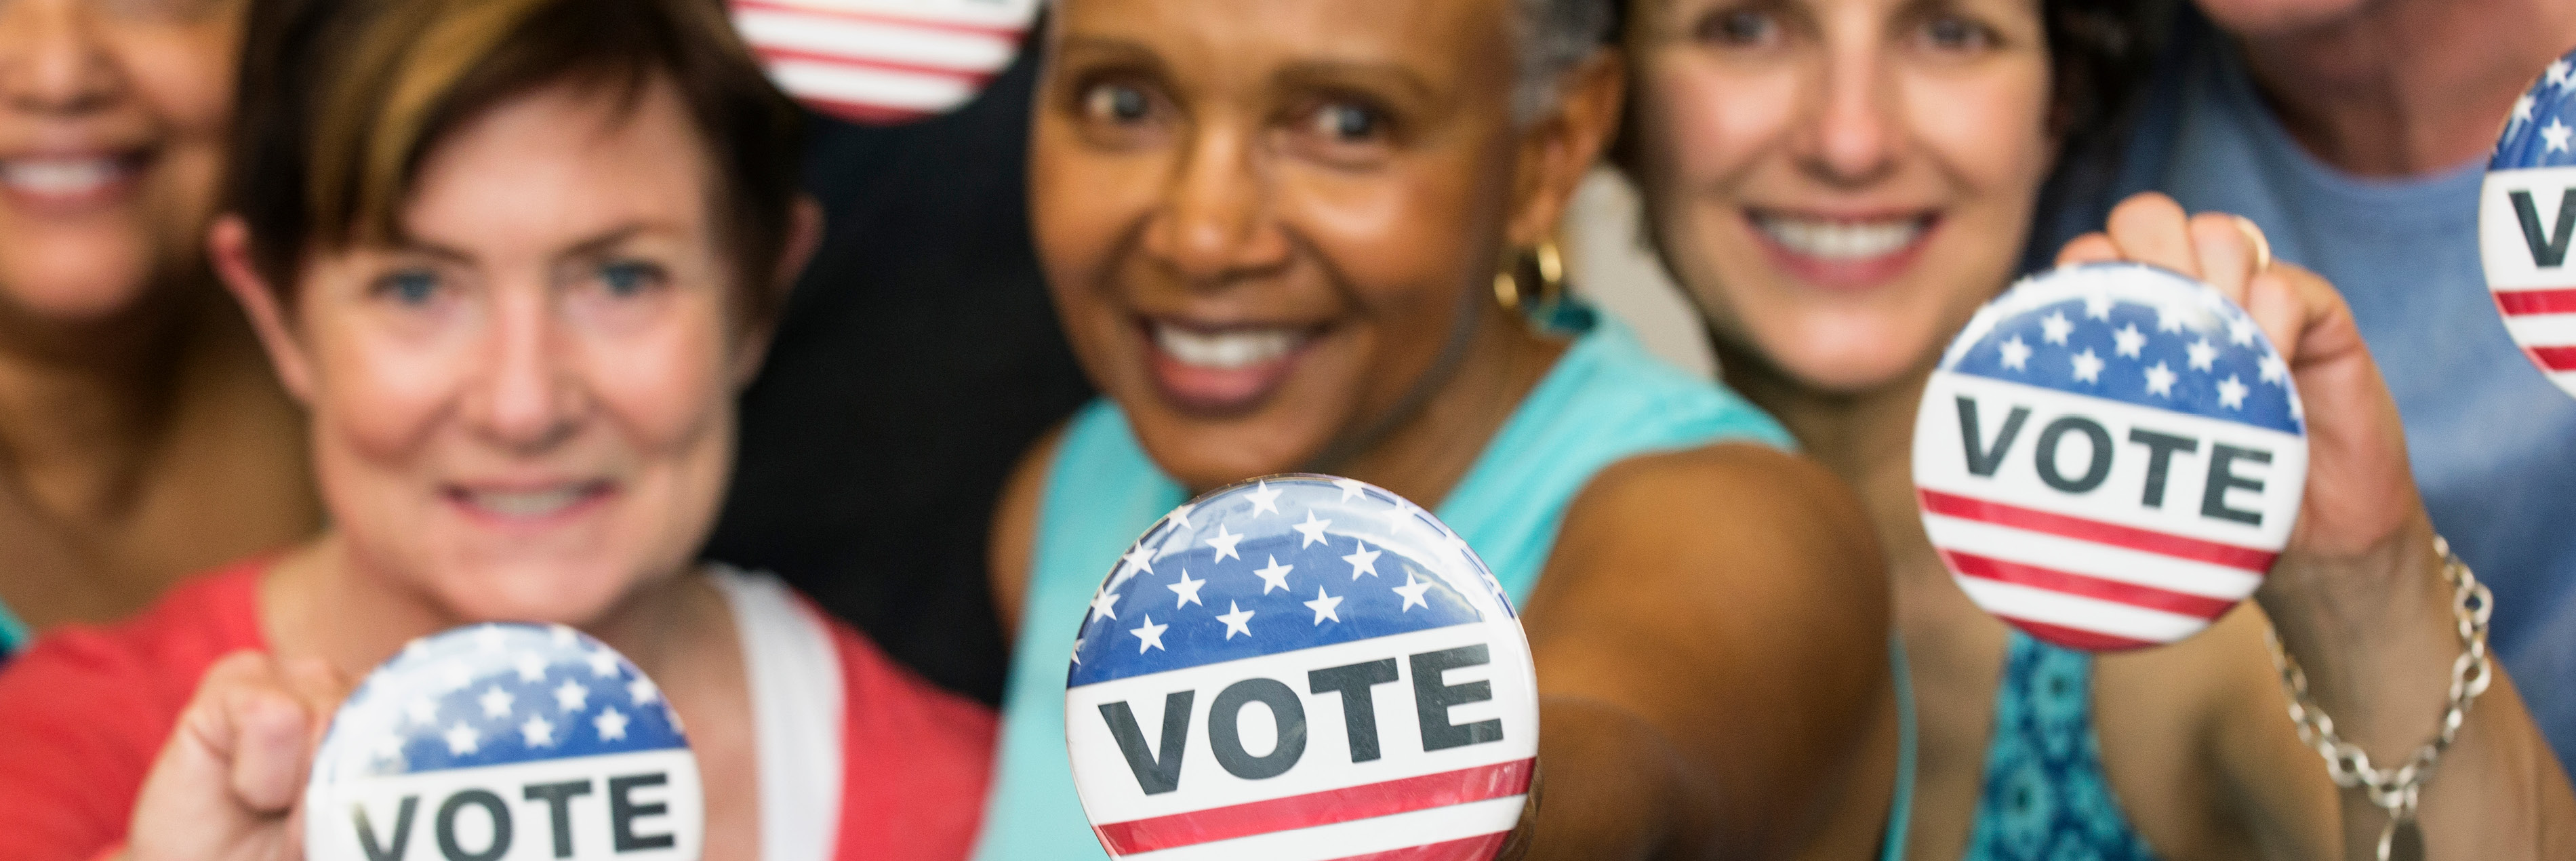 Women holding vote pins